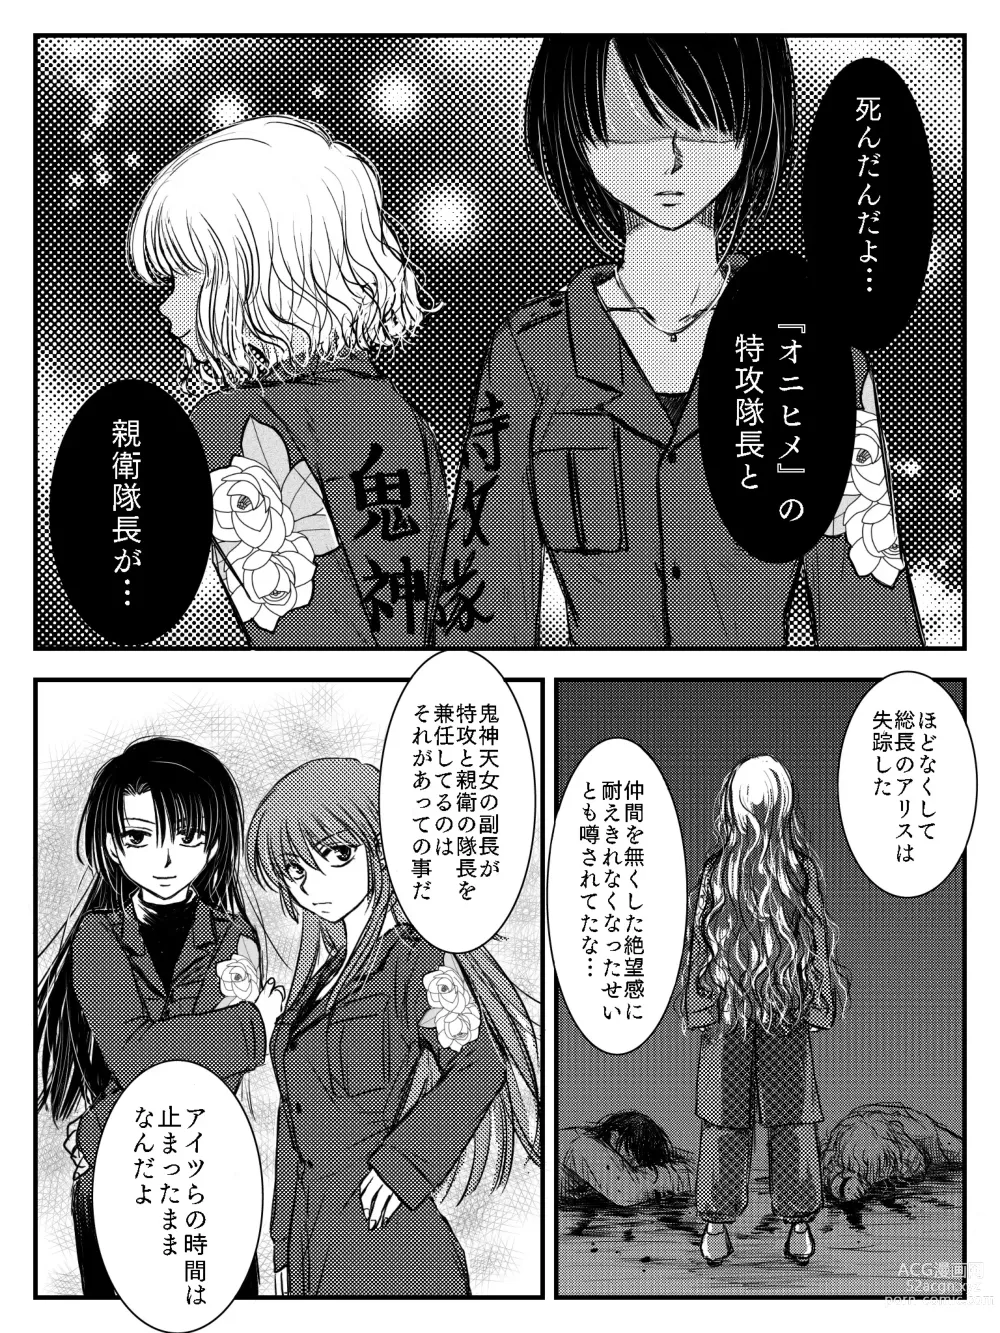 Page 16 of doujinshi LADIES NAVIGATION Episode 4